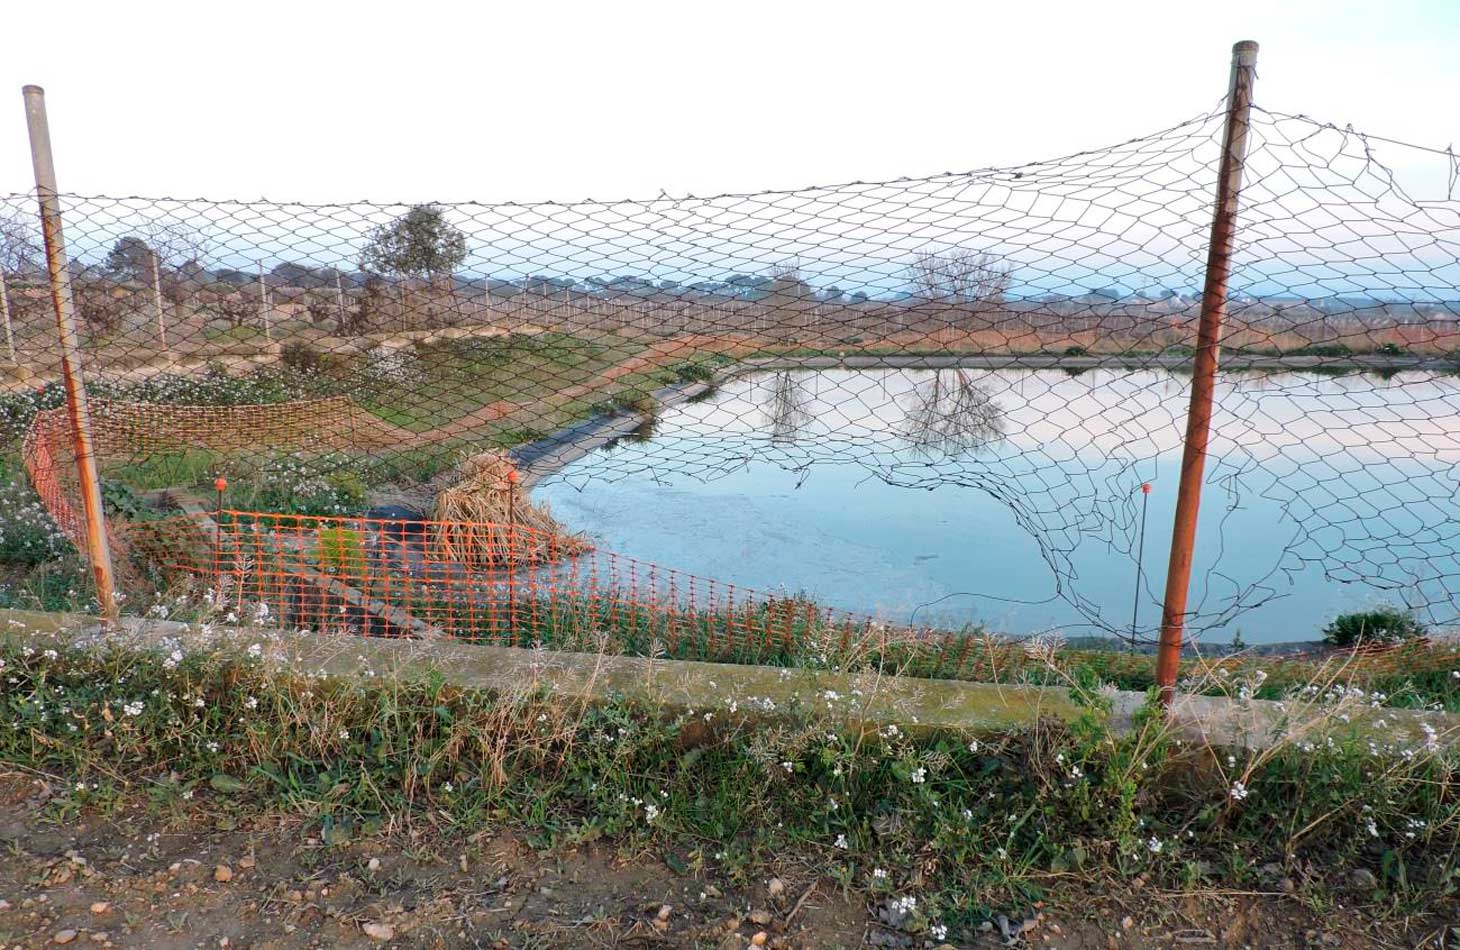 Geven també denuncia l'estat d'bandonament de la llacuna de La Torregassa, amb la tanca de seguretat foradada